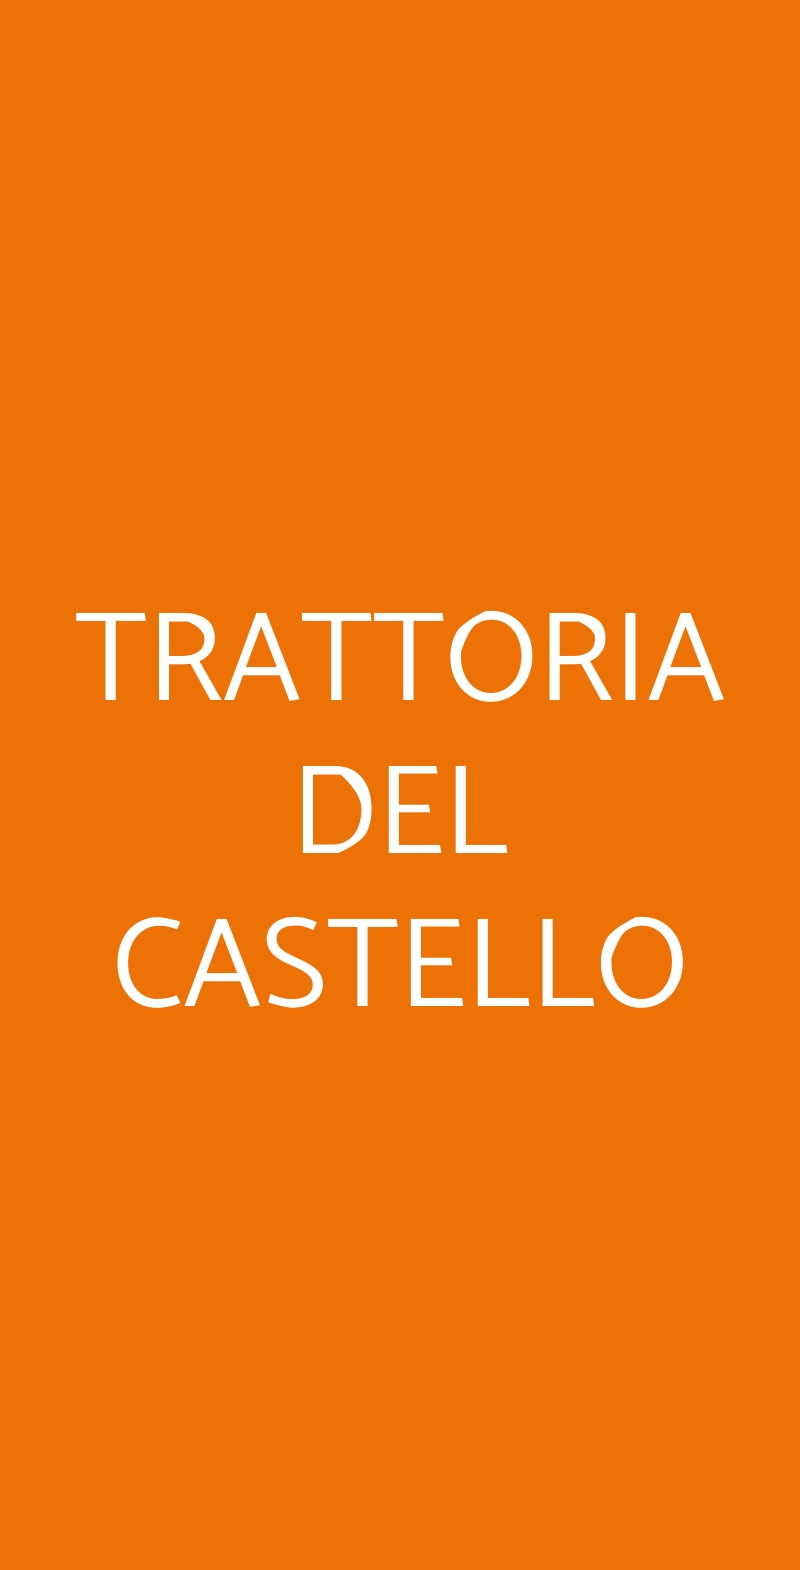 TRATTORIA DEL CASTELLO Bracciano menù 1 pagina